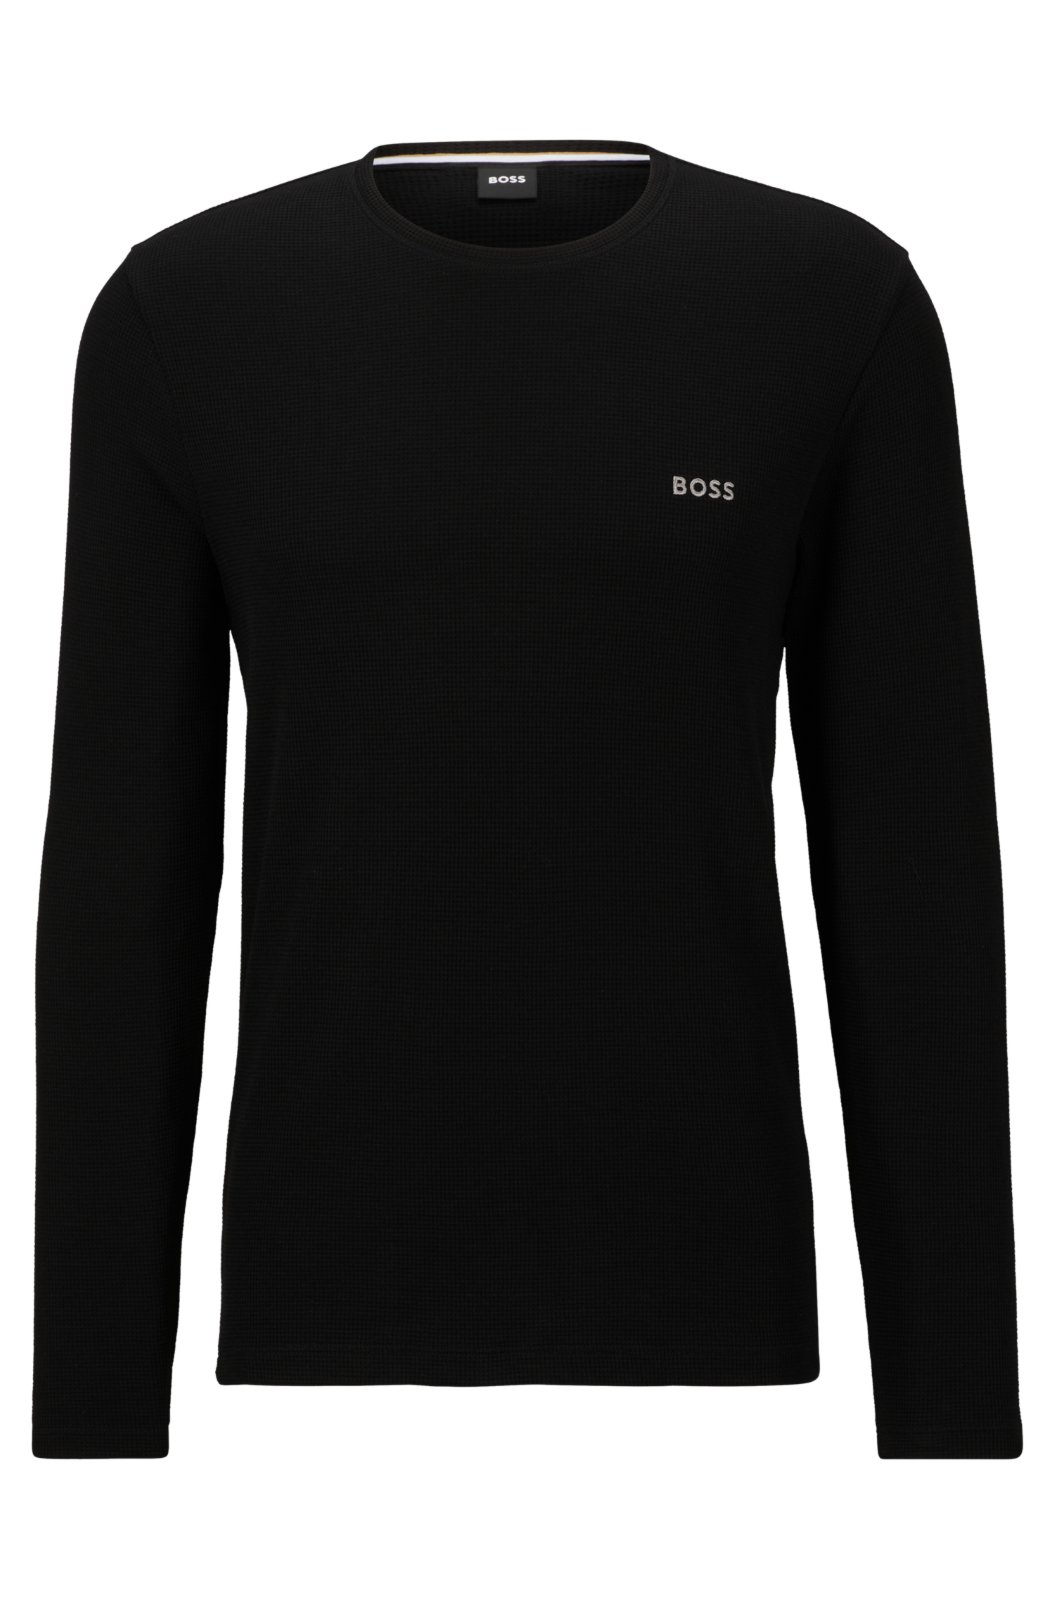 Camiseta Regata BOSS Tank Top Original Preto - Escorrega o Preço